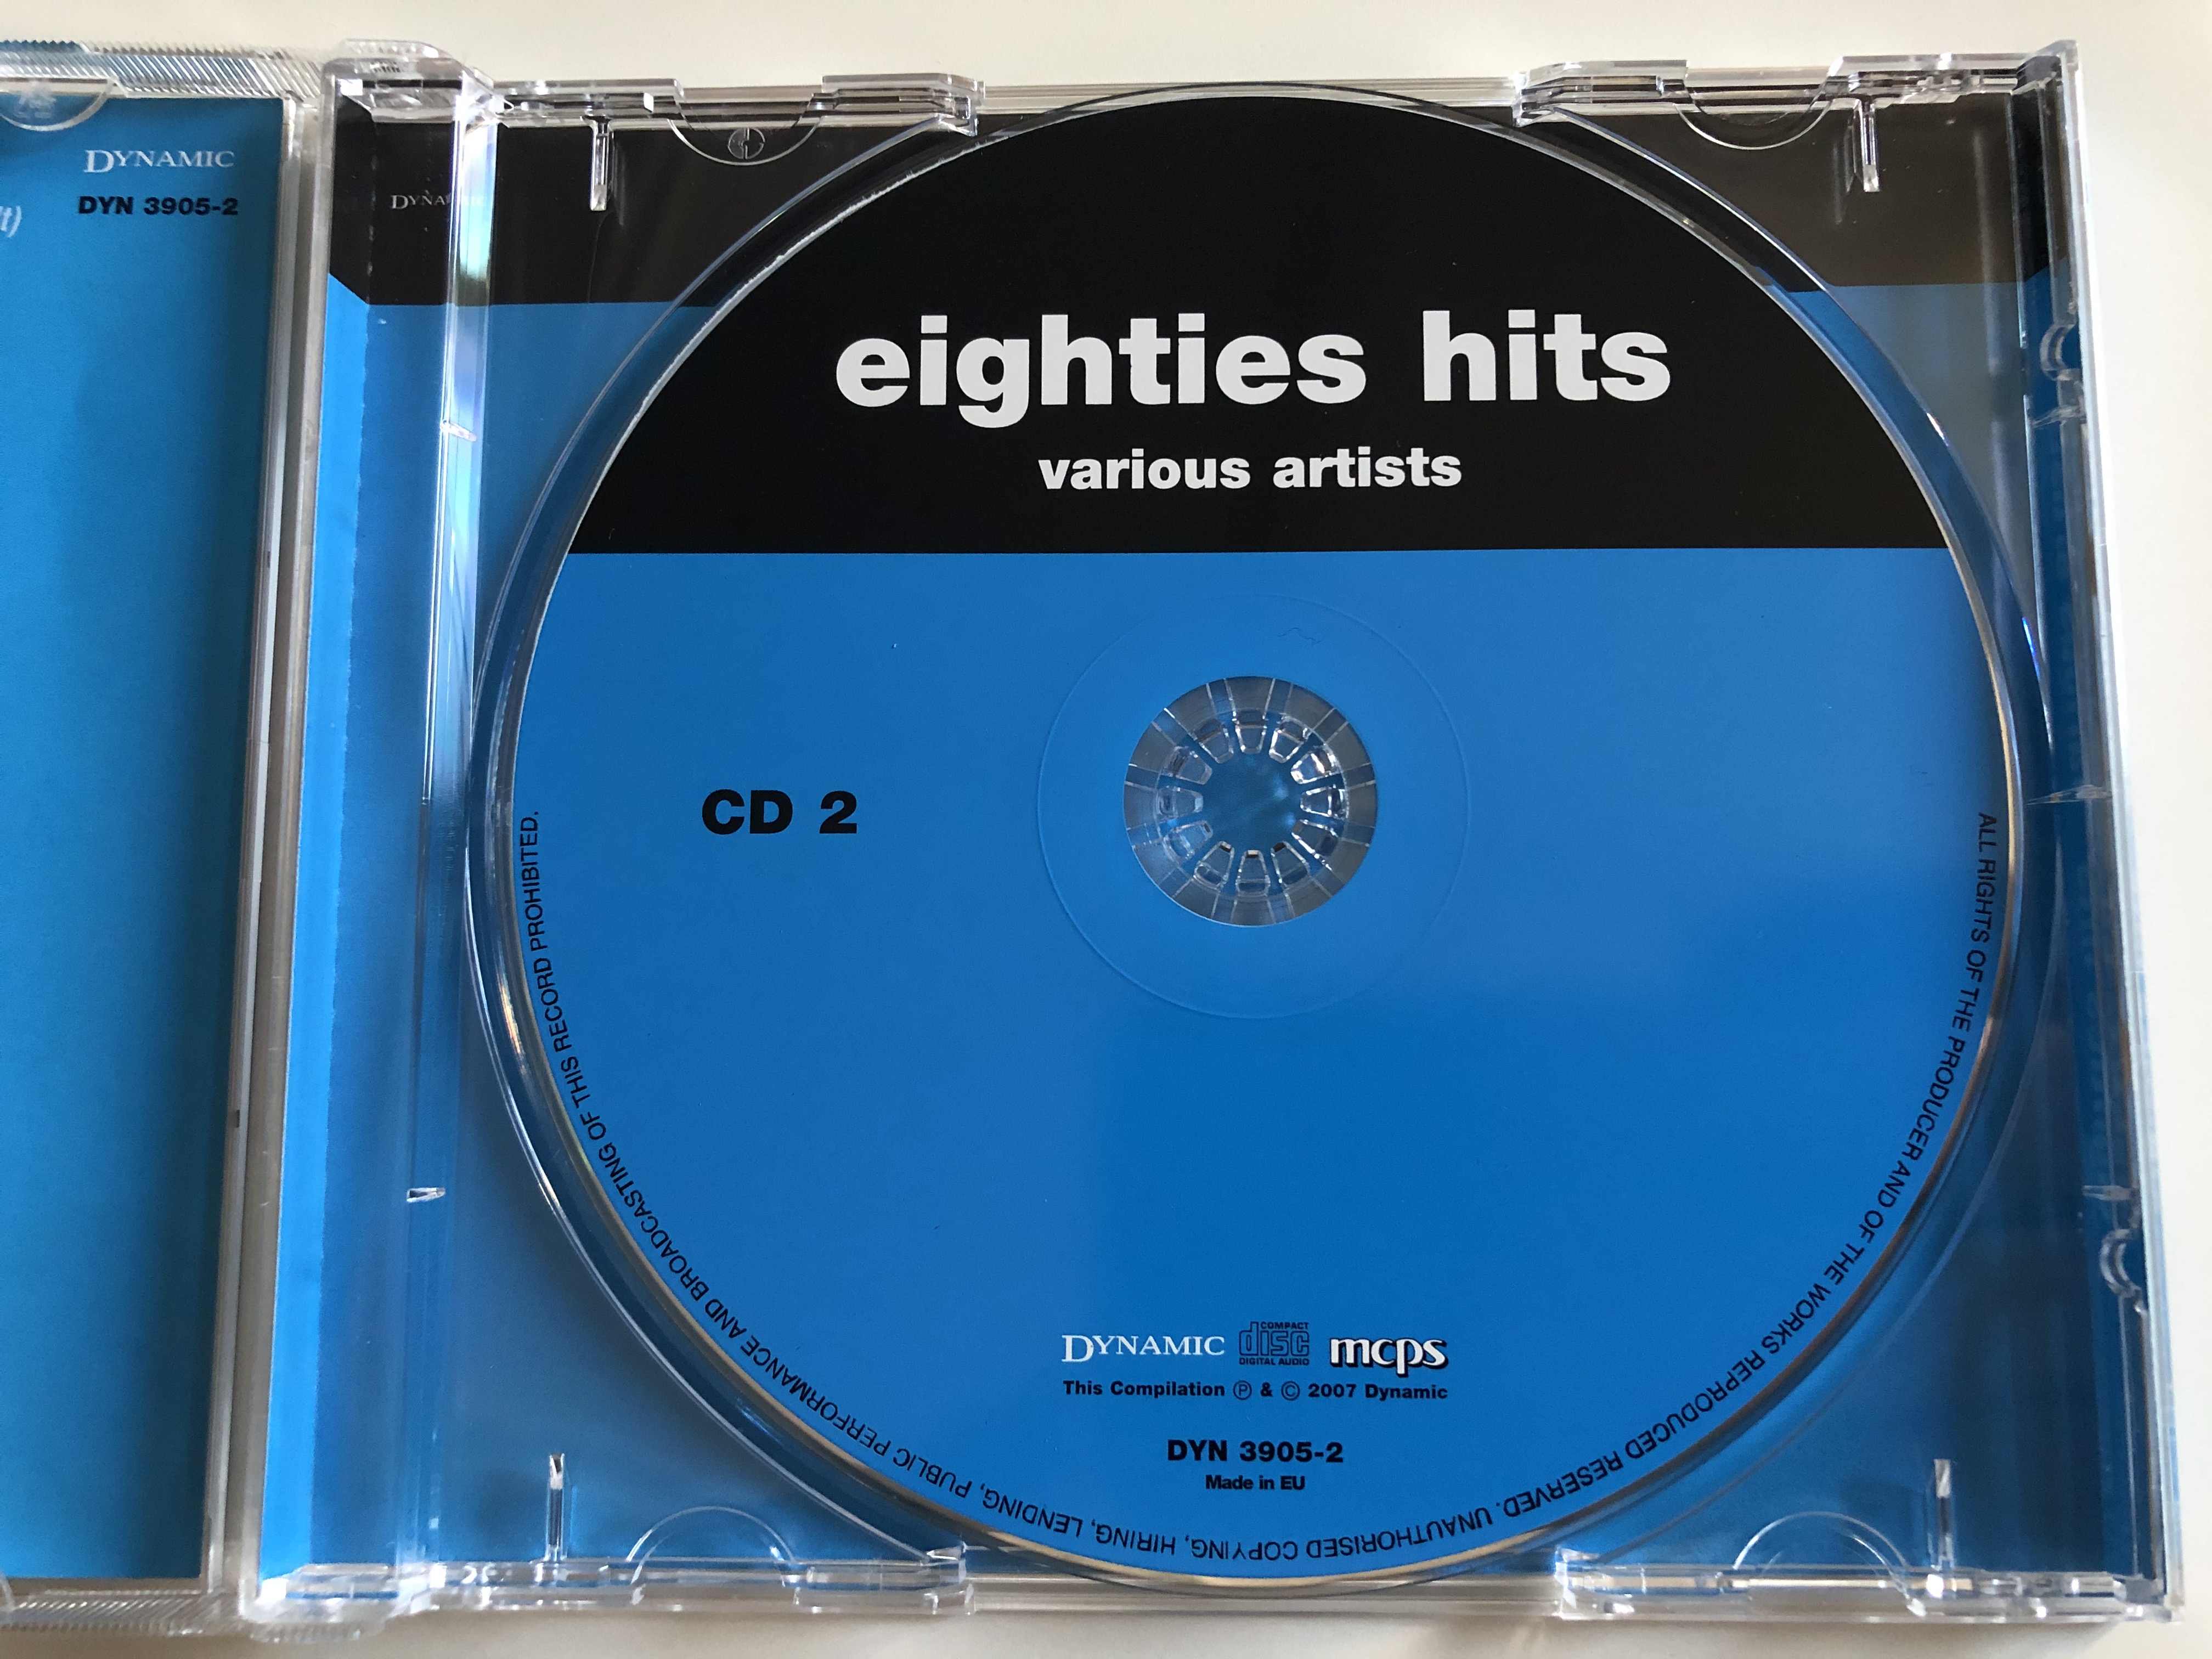 eighties-hits-cd-2-dynamic-audio-cd-2007-dyn-3905-2-3-.jpg